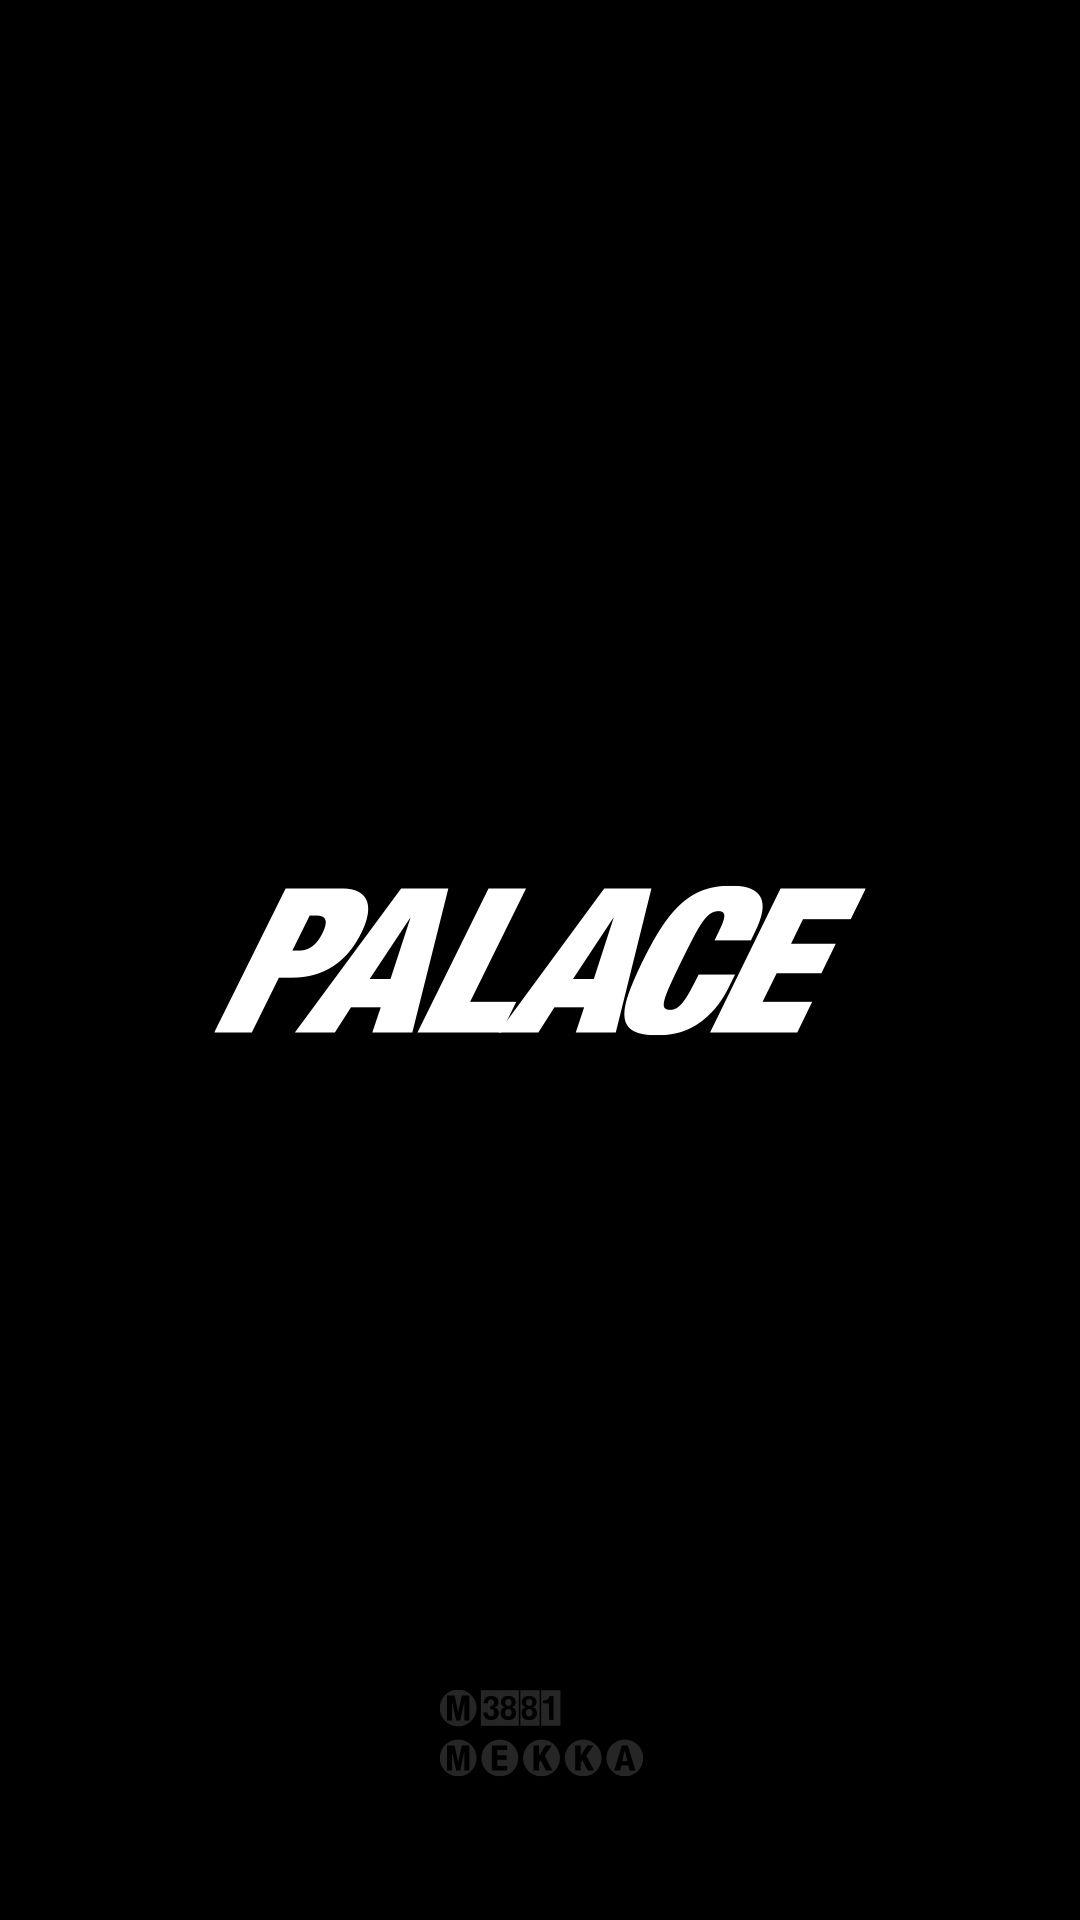 Palace Brand Logo - Palace Skateboards [M]